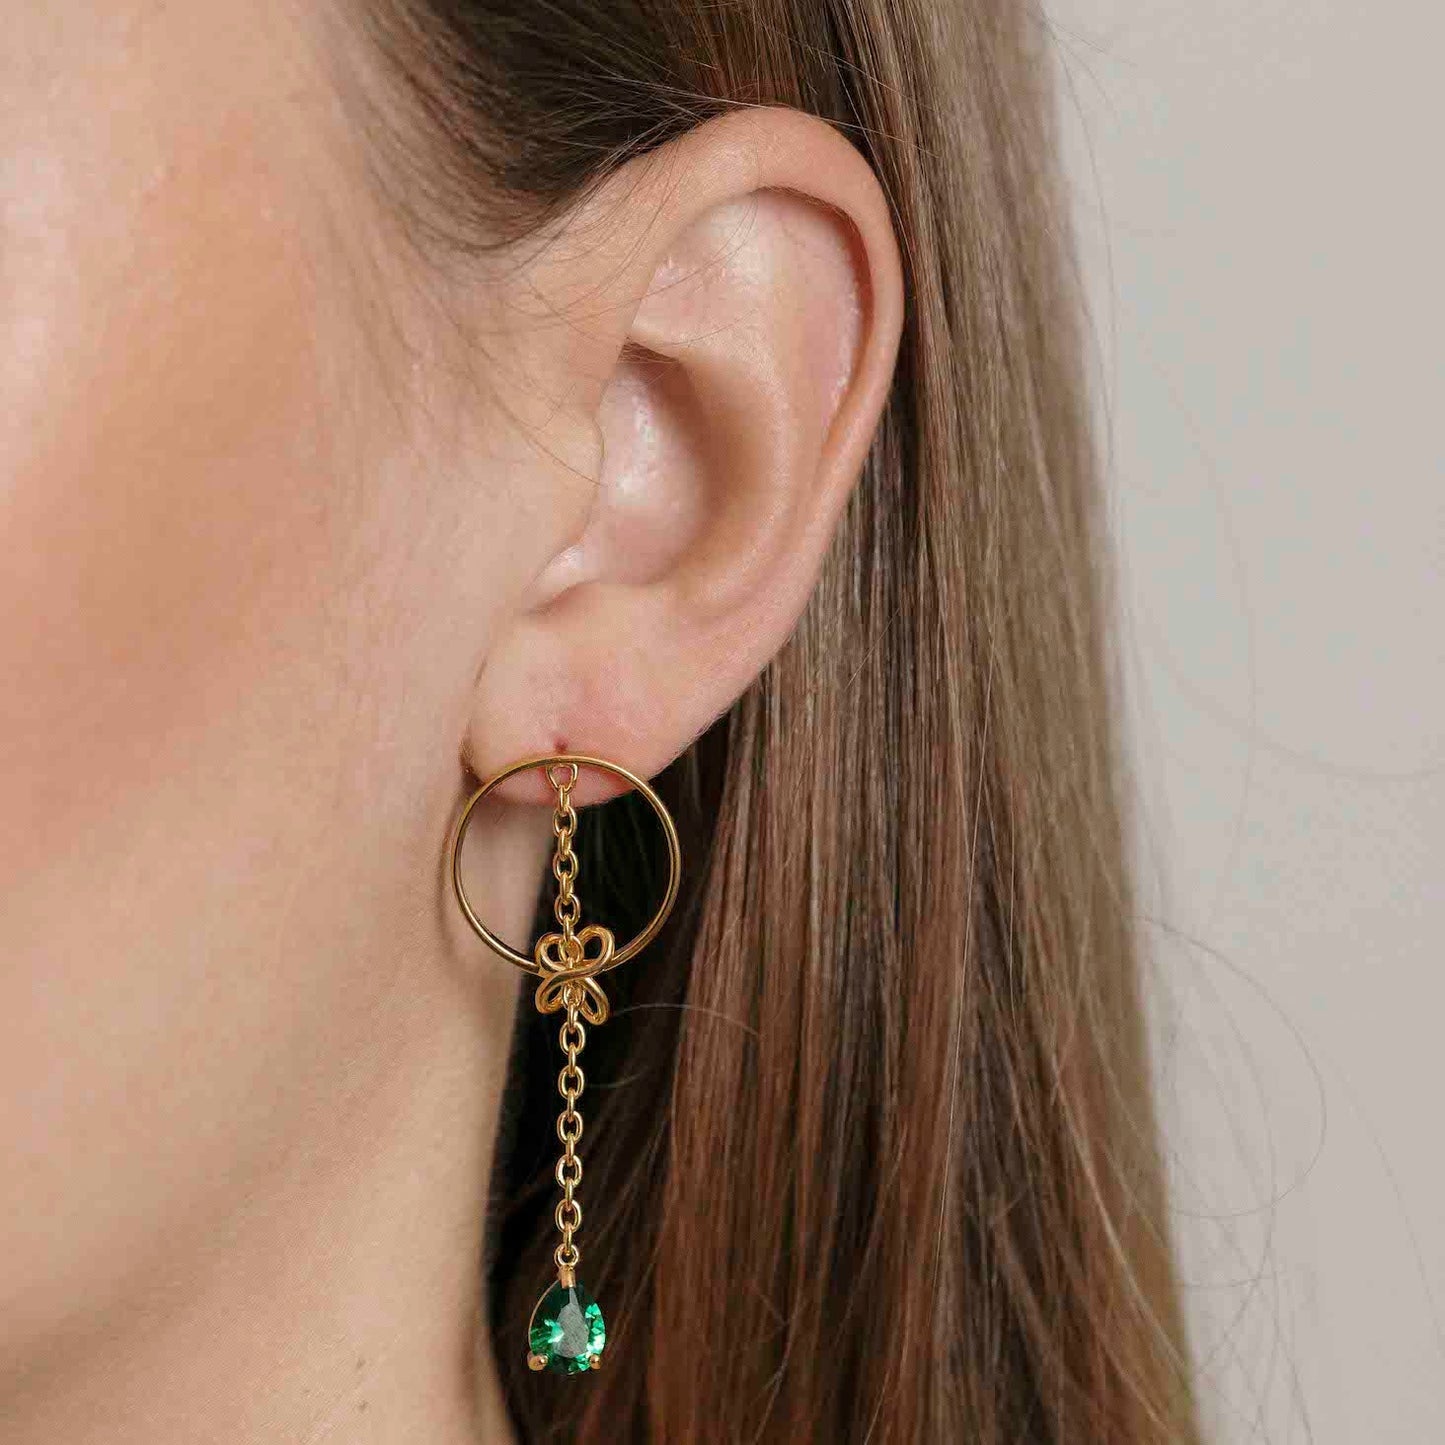 The Solera Earrings